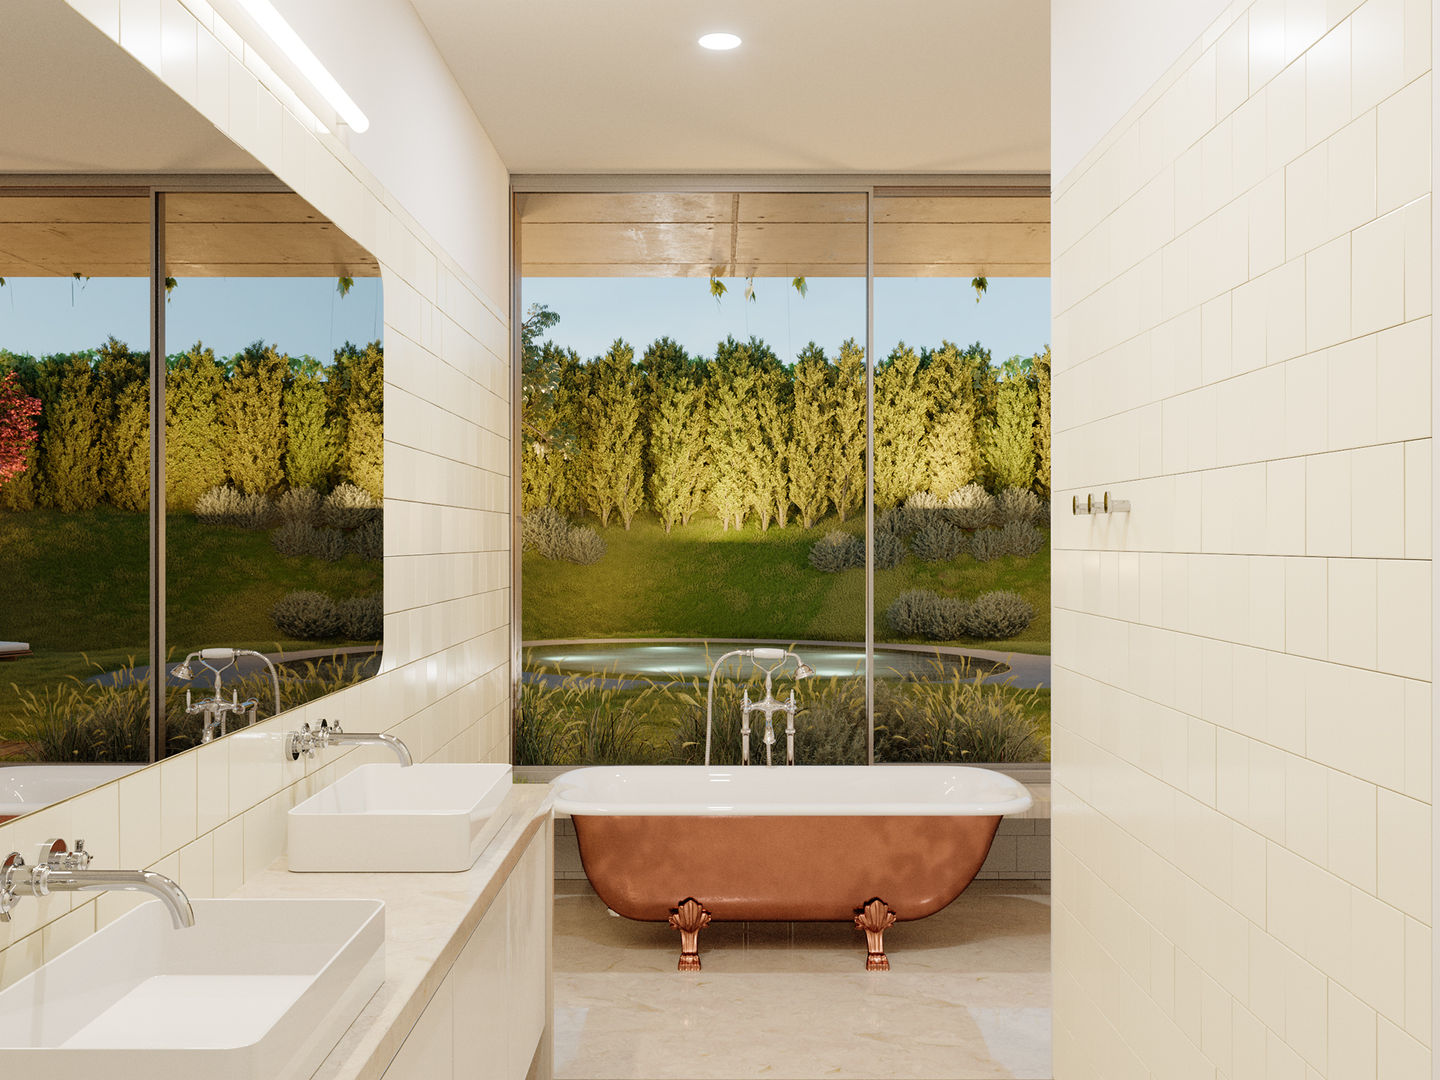 Casas de Banho Modernas. Um design intemporal para os mais novos